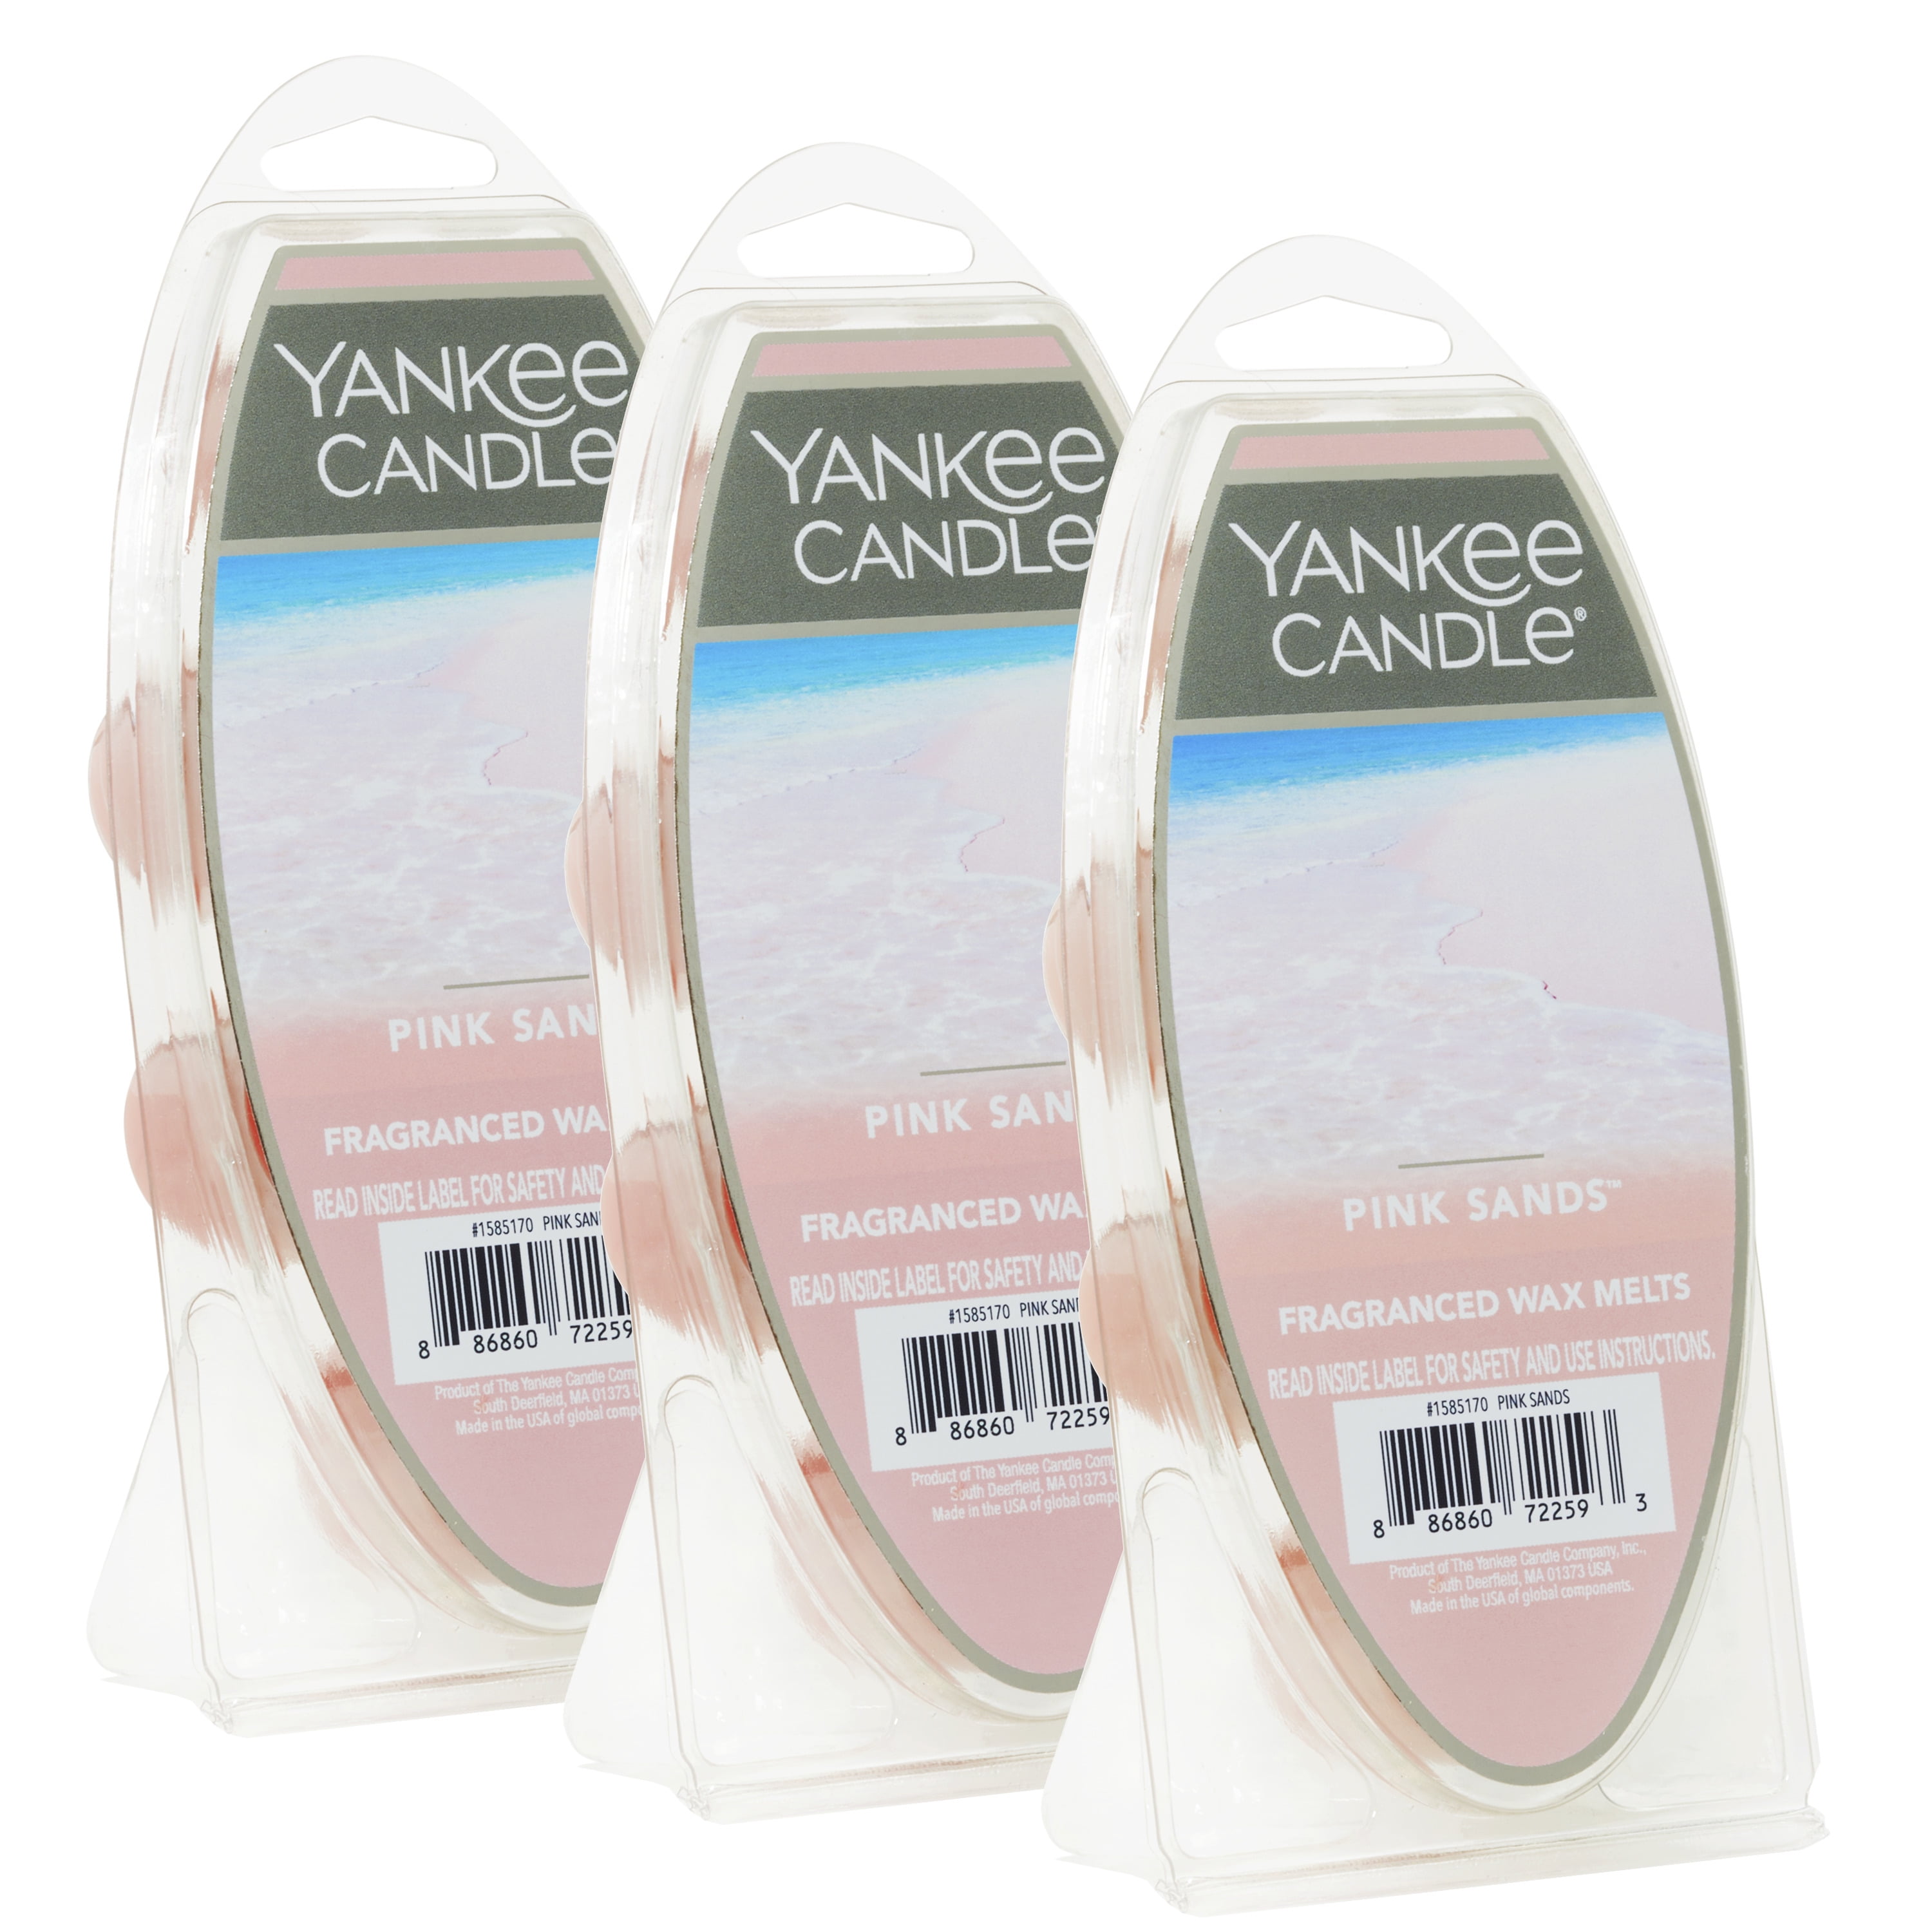 YANKEE CANDLE Wax Tarts Melts Variety Huge Choice of Tart 